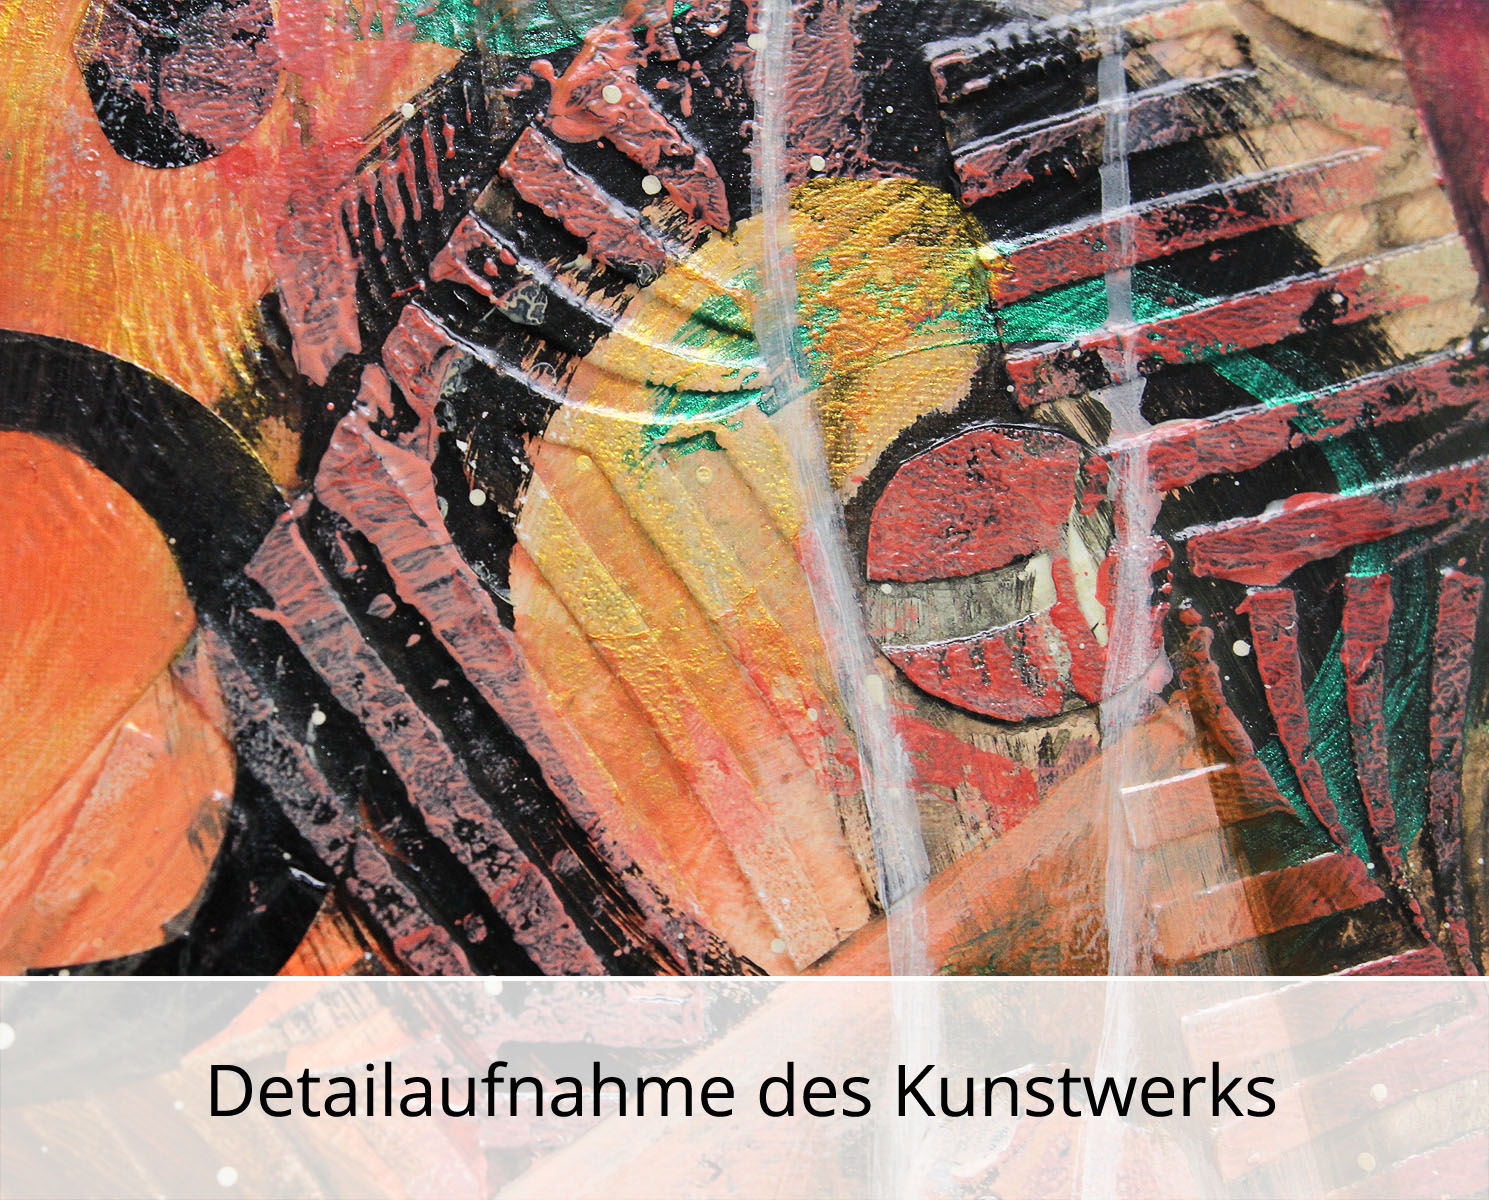 Abstrakte Malerei von Ewa Martens: "Alles wovon wir träumen", Original/Unikat